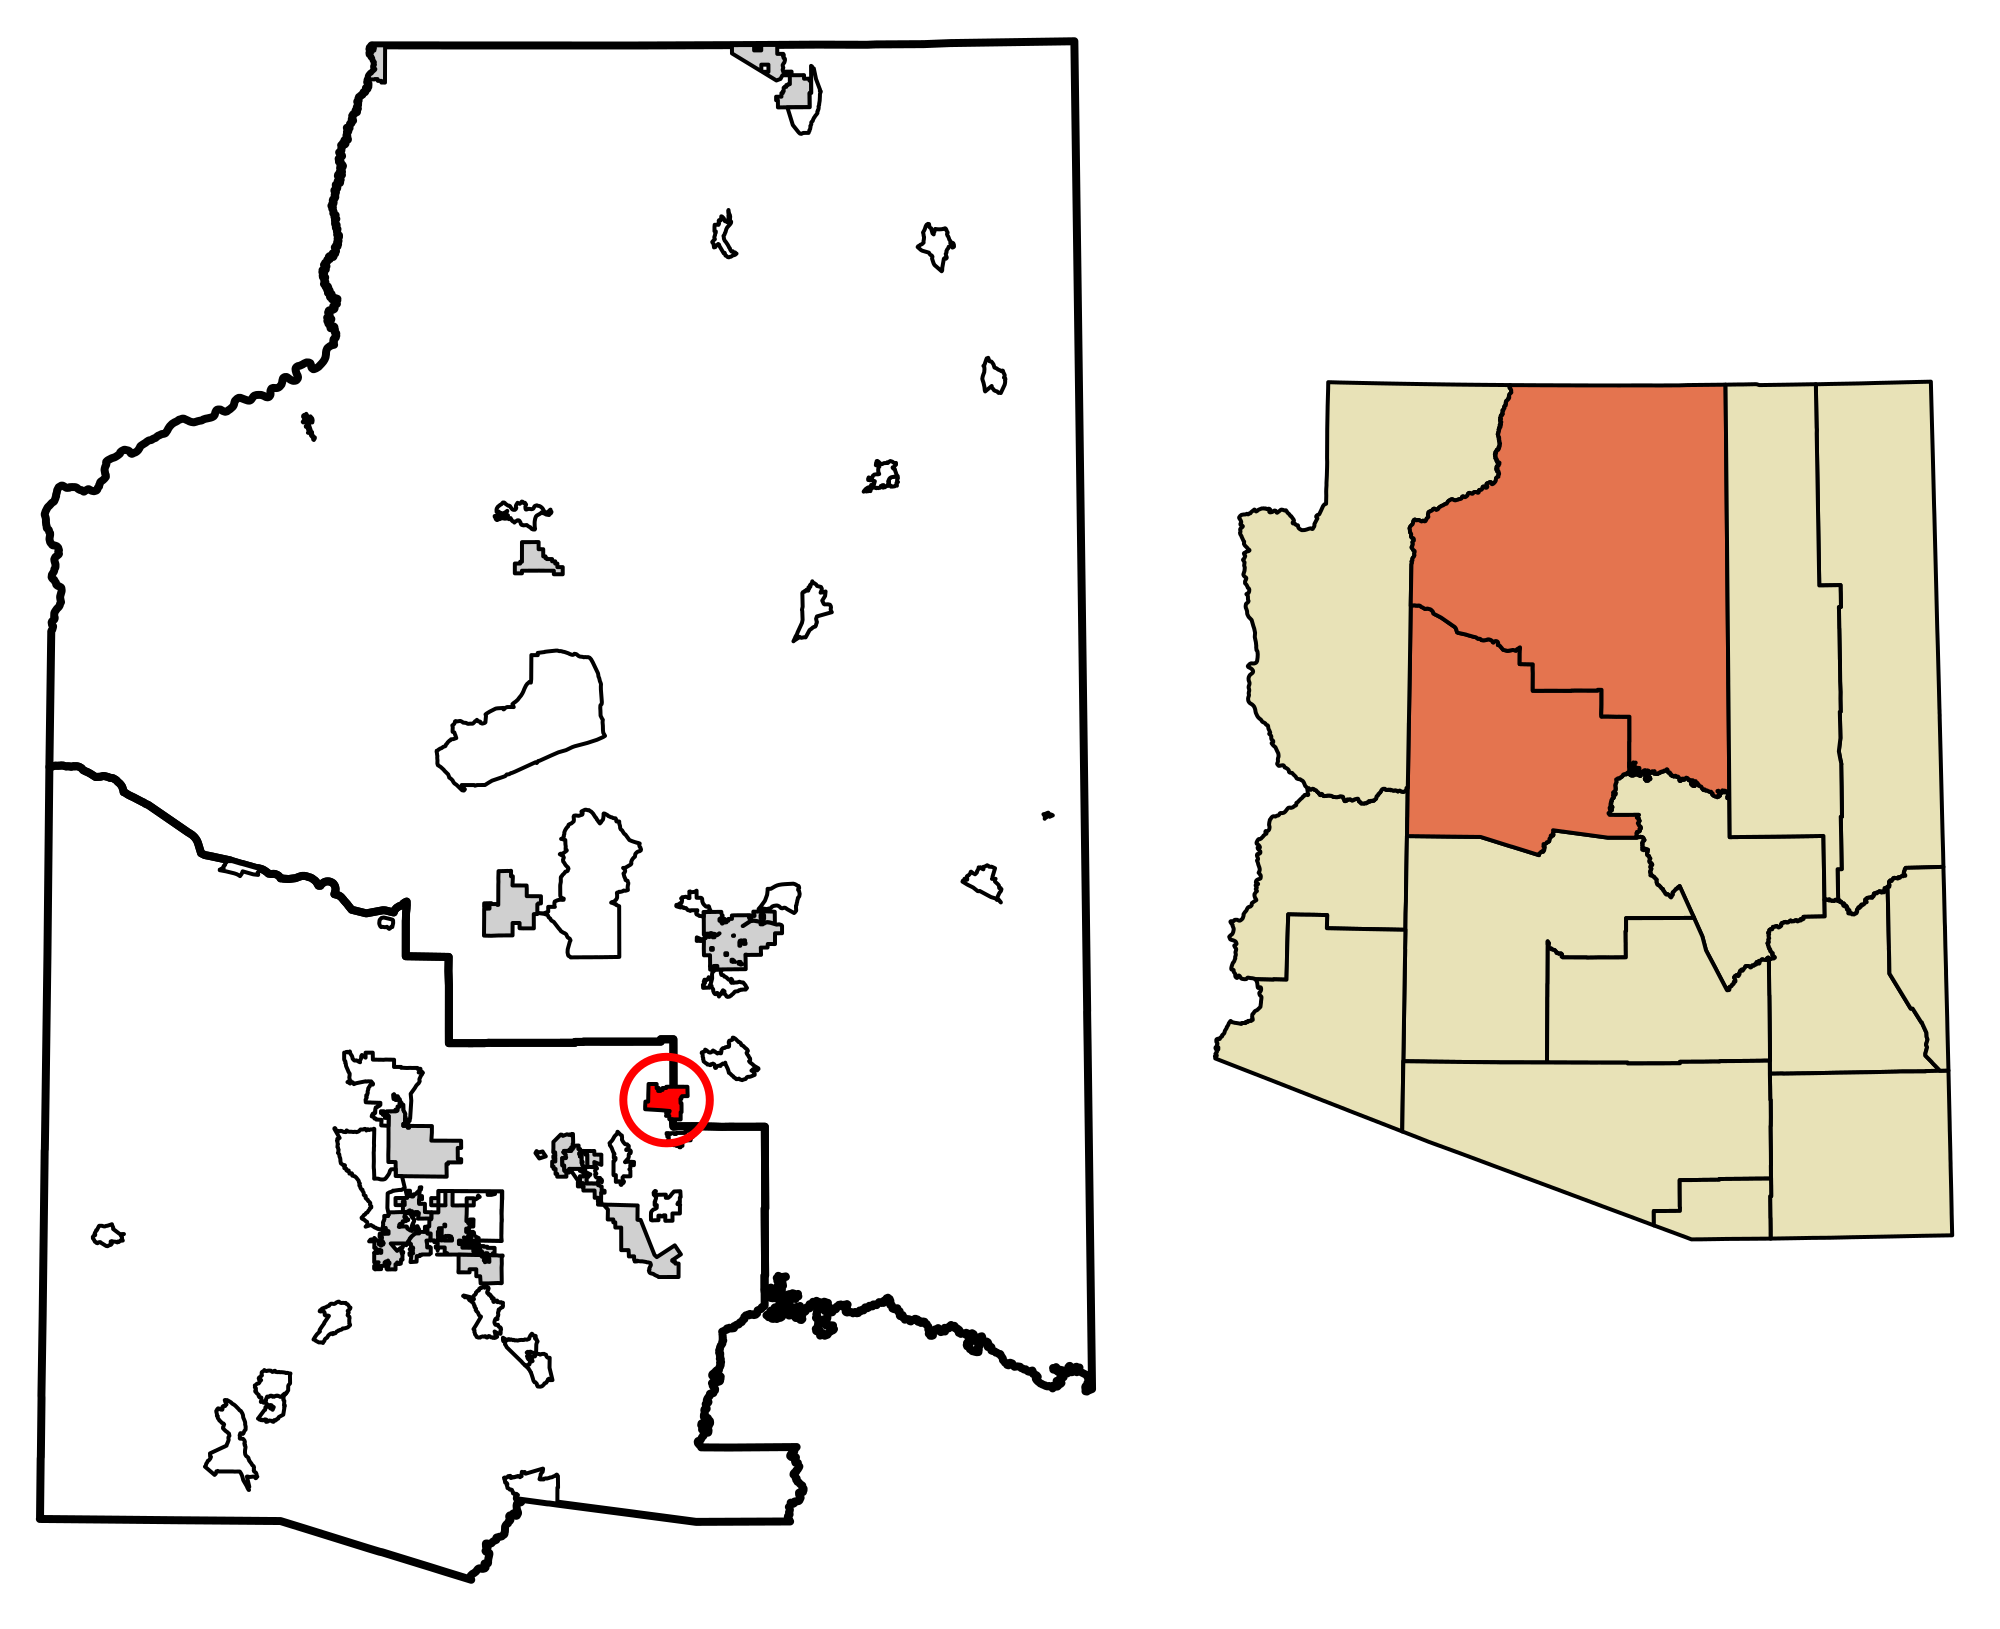 Sedona, Arizona - Wikipedia